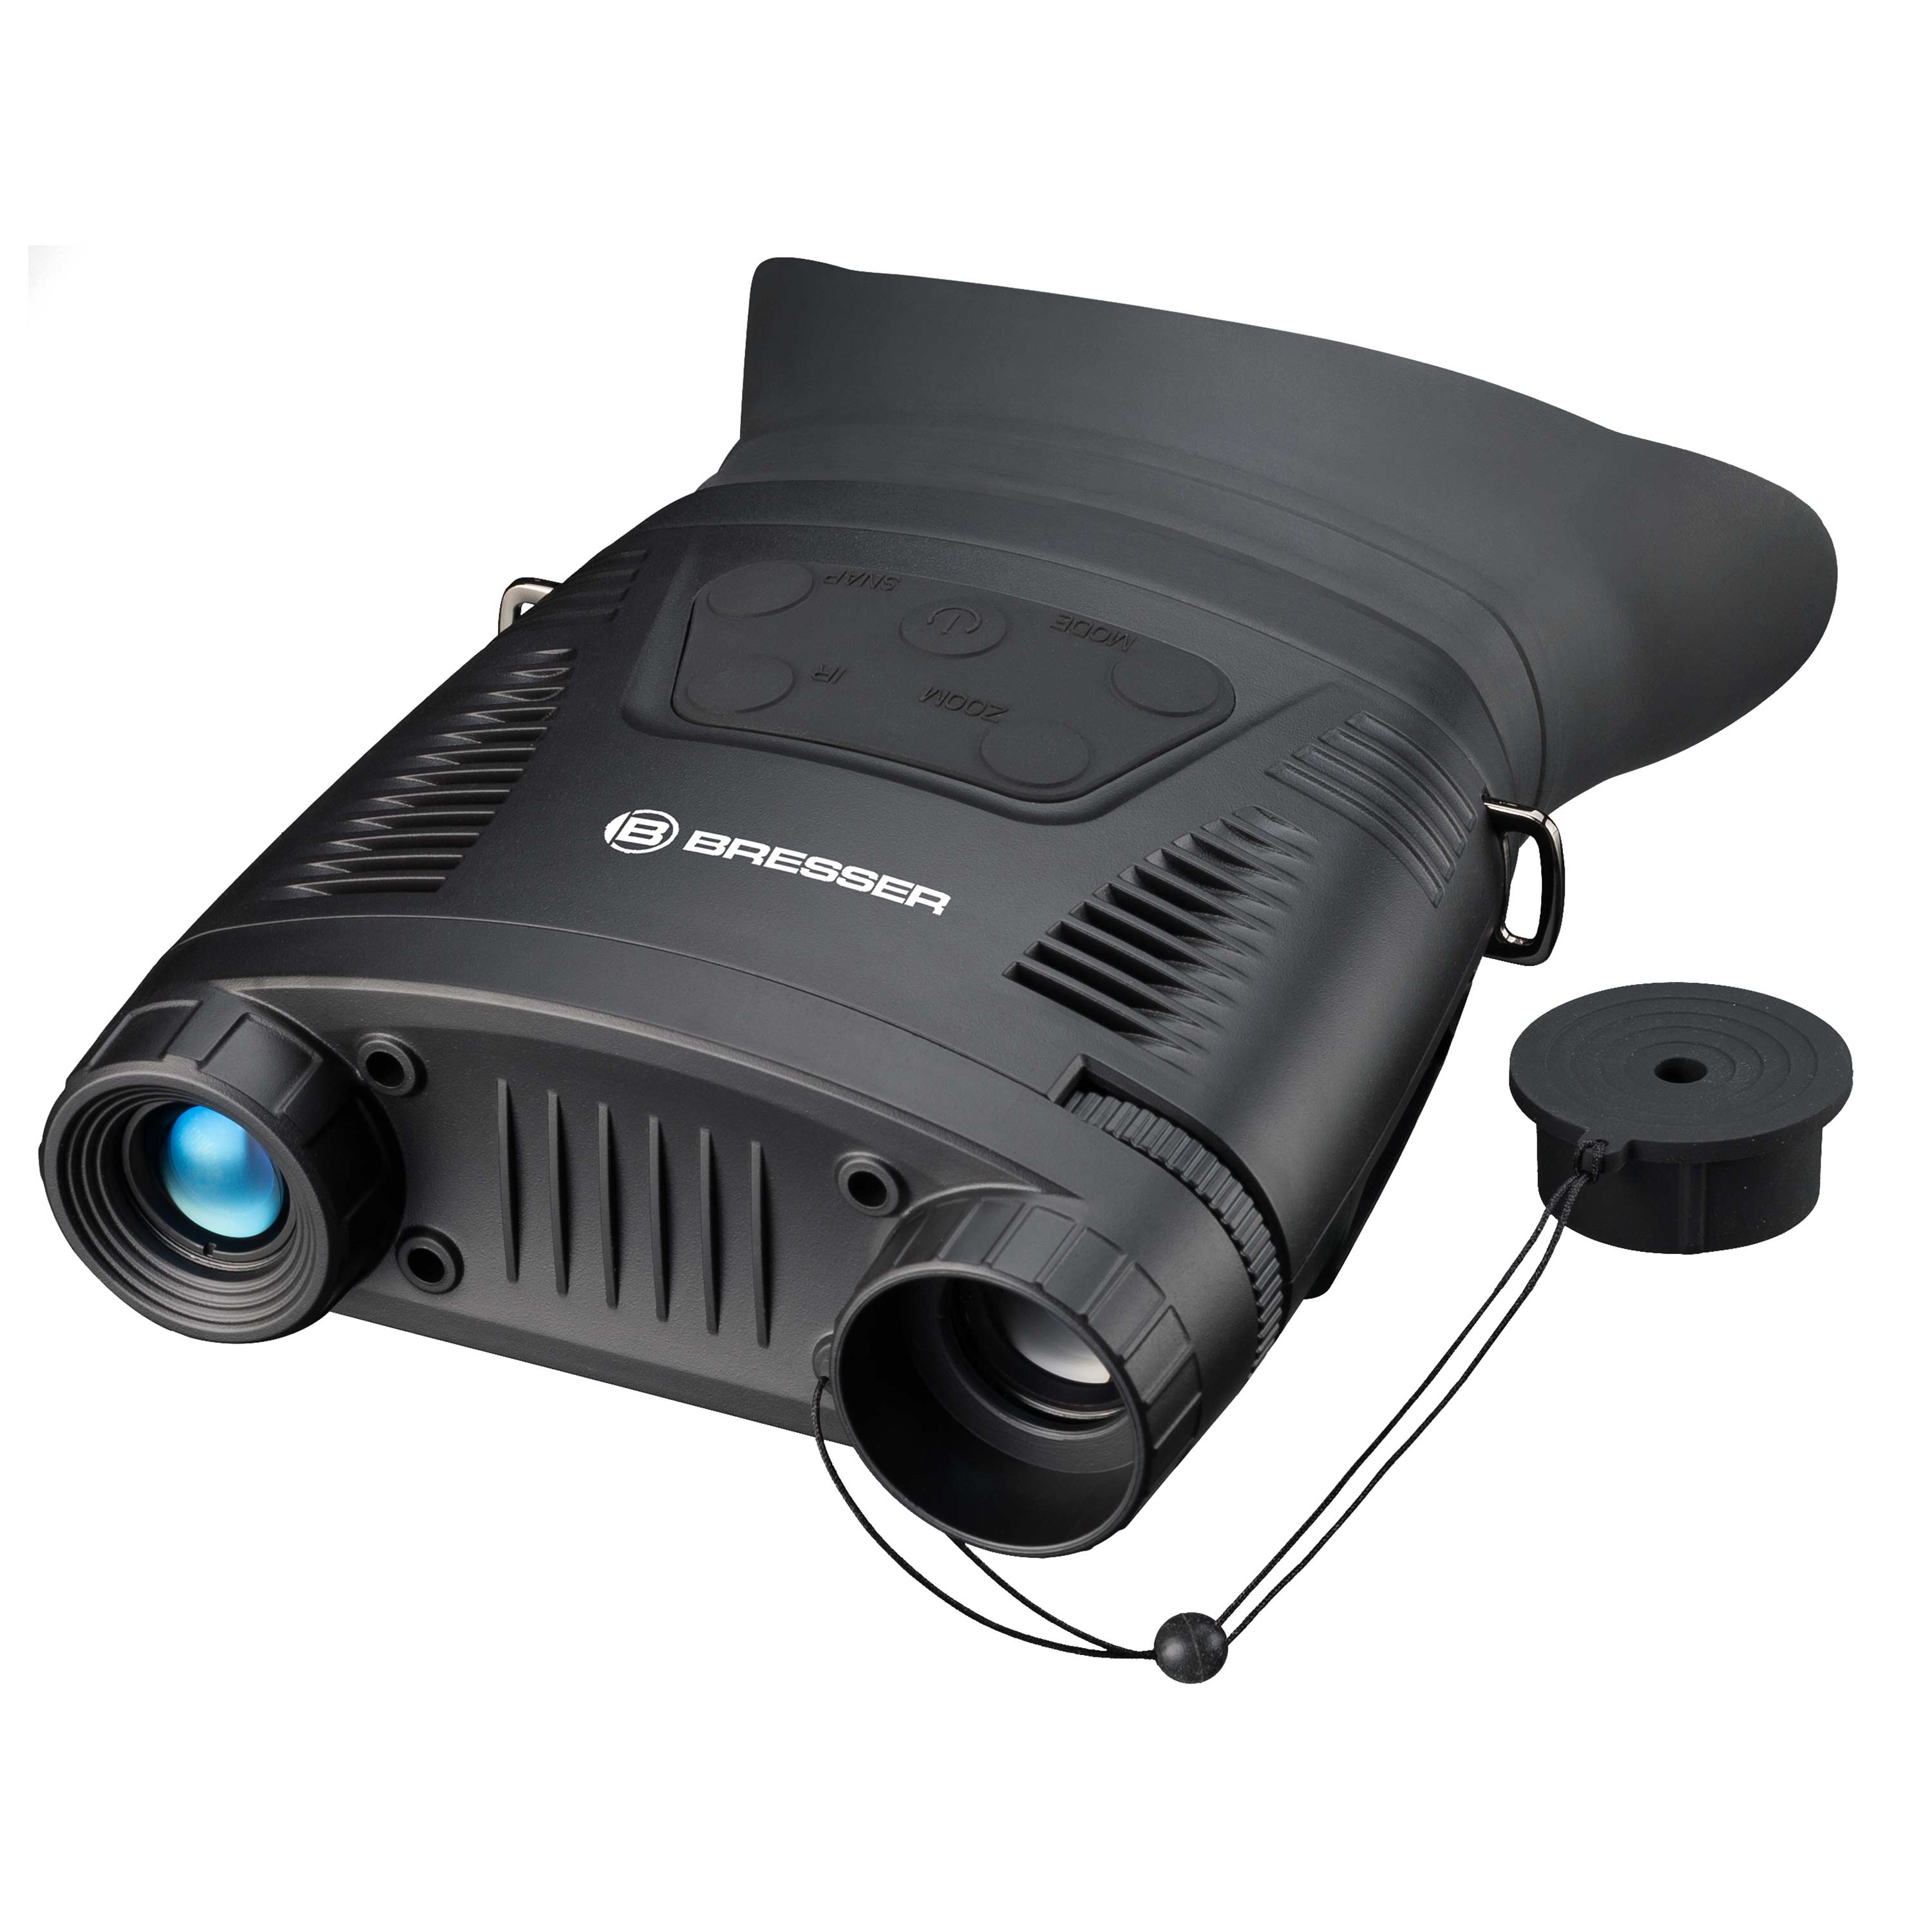 Bresser Digital Nachtsichtgerät BNCLR 3.5x mit Aufnahmefunktion